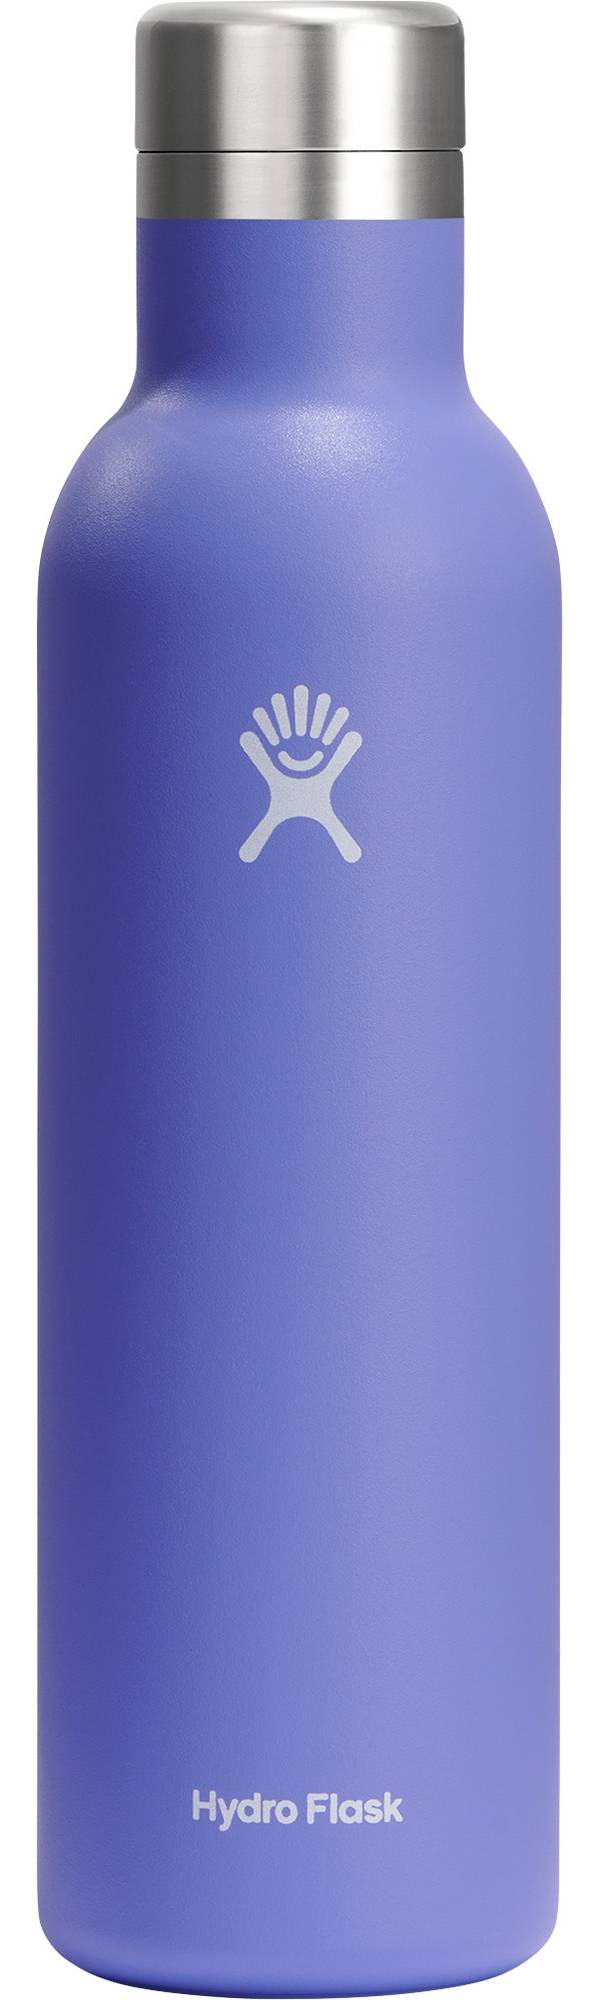 Hydro Flask 25 oz. Ceramic Wine Bottle product image